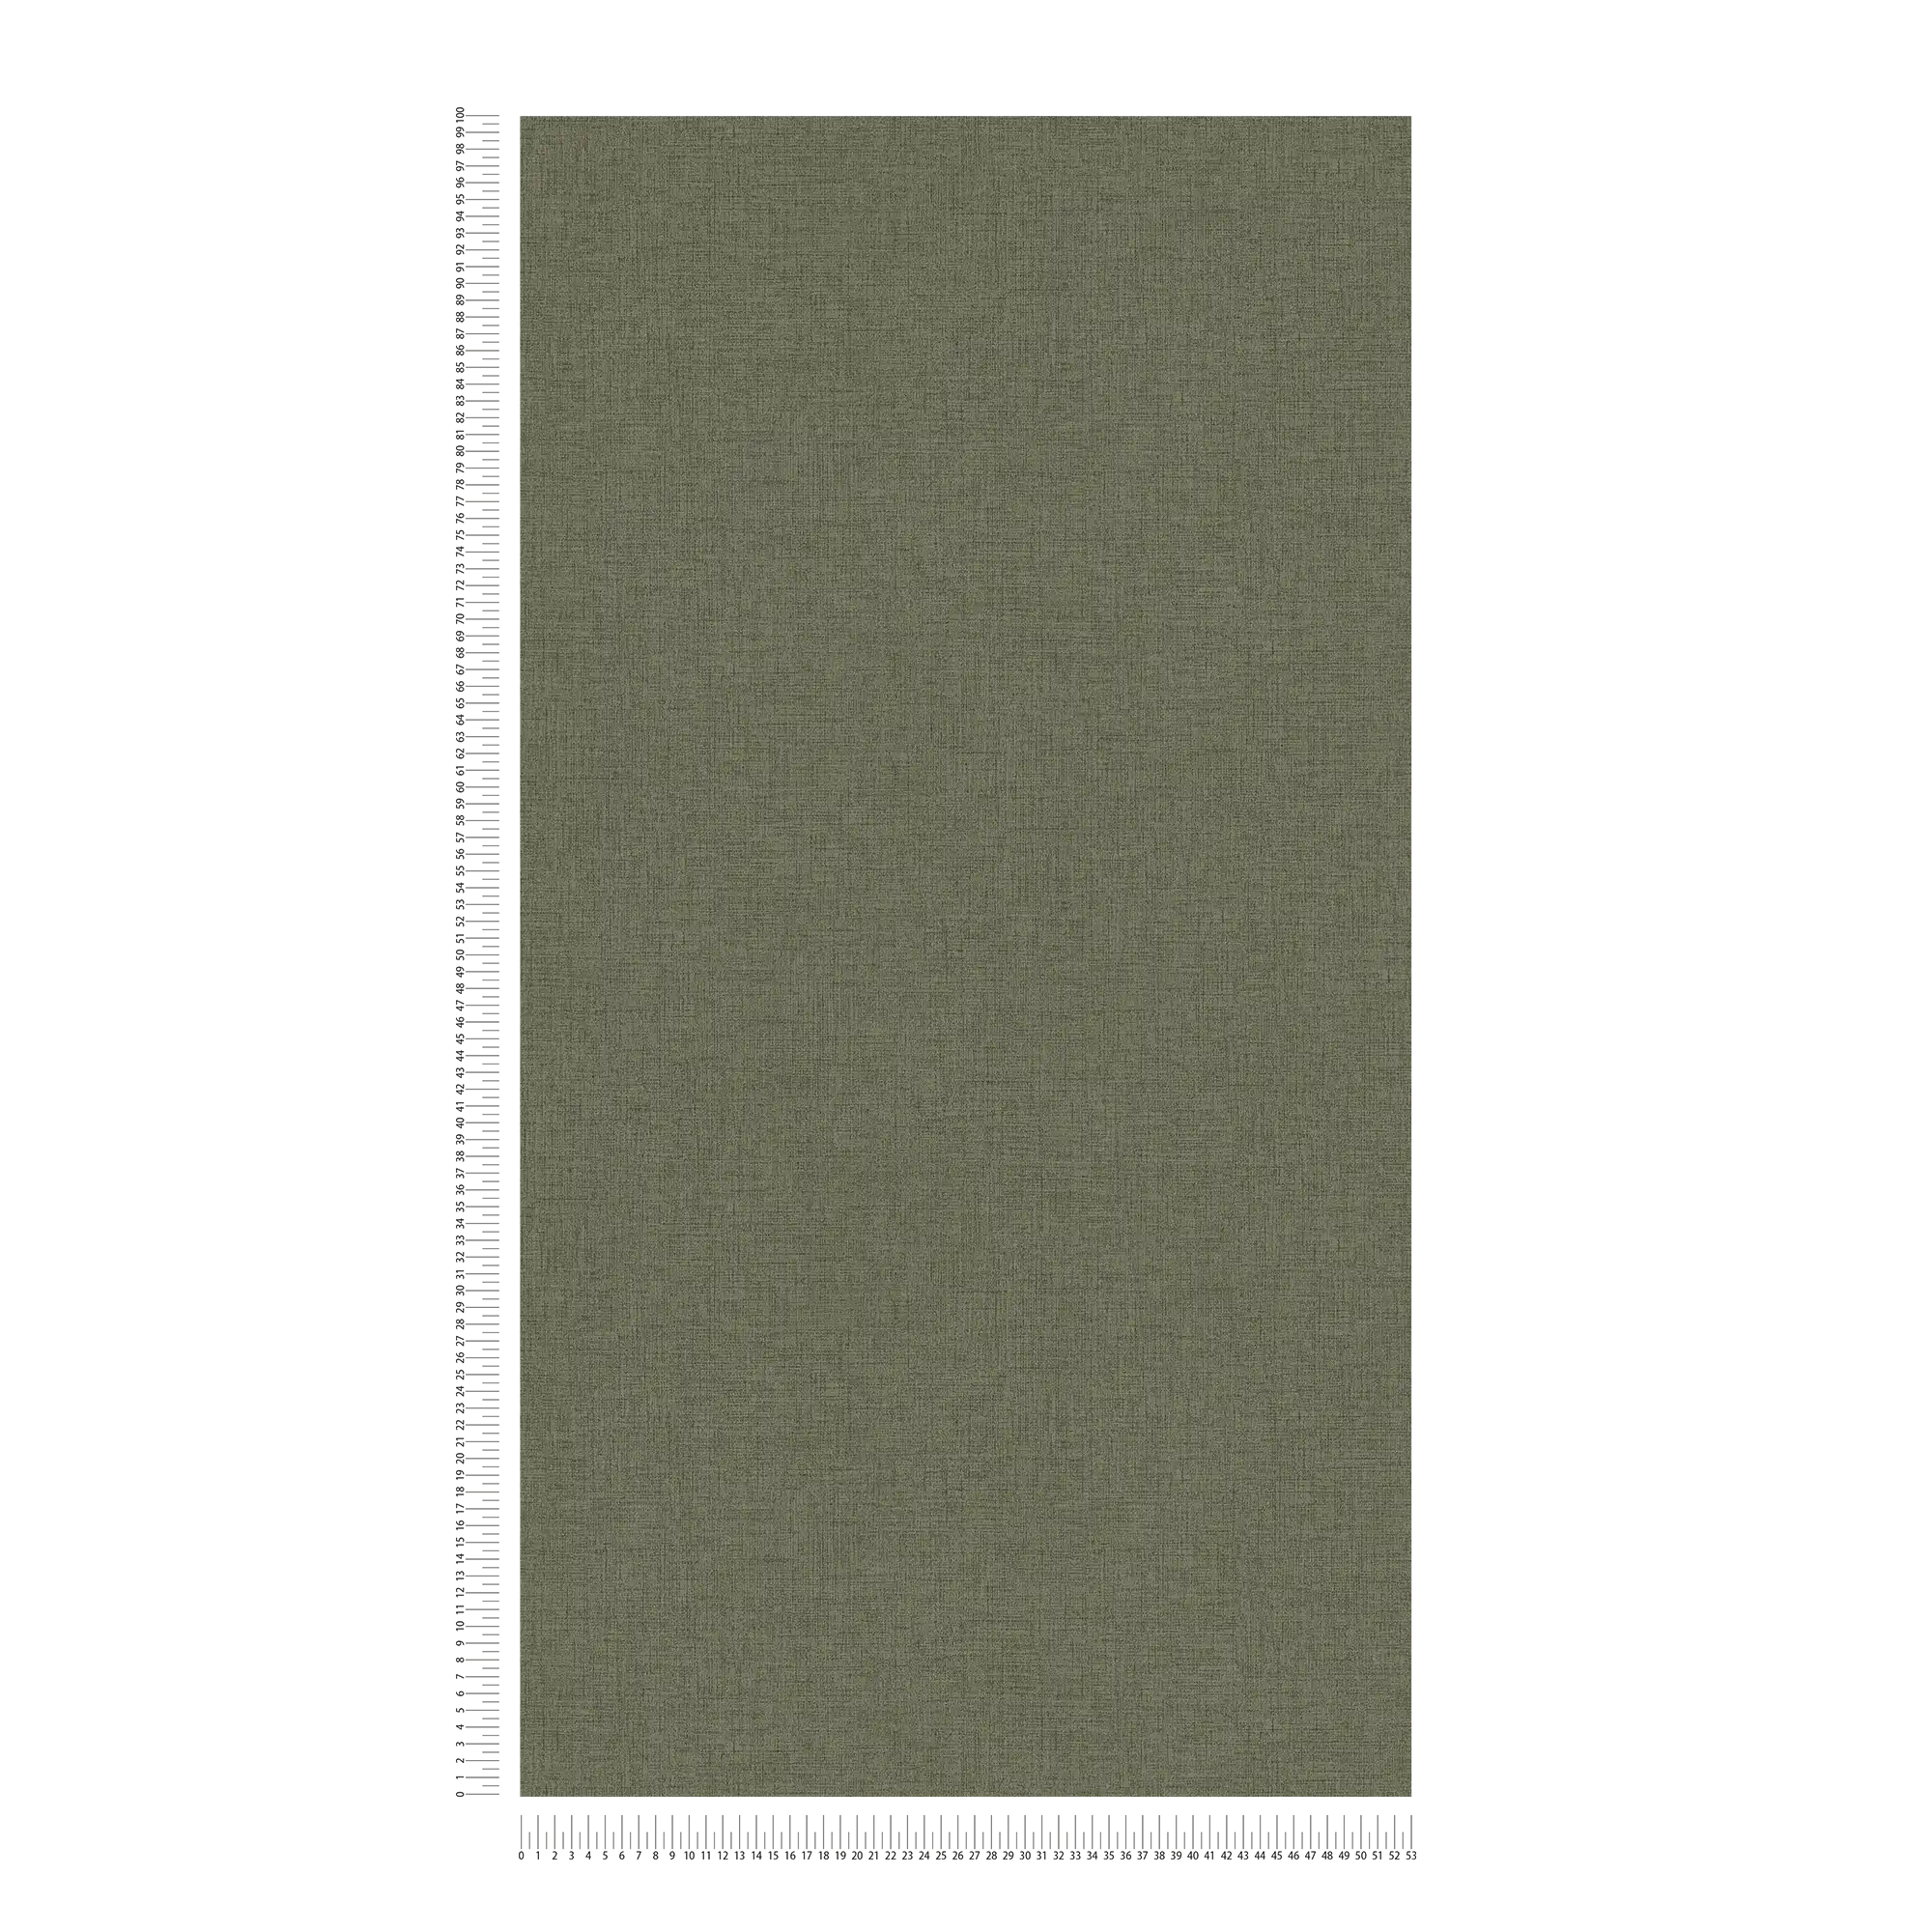             Carta da parati in tessuto non tessuto a tinta unita con aspetto tessile - verde
        